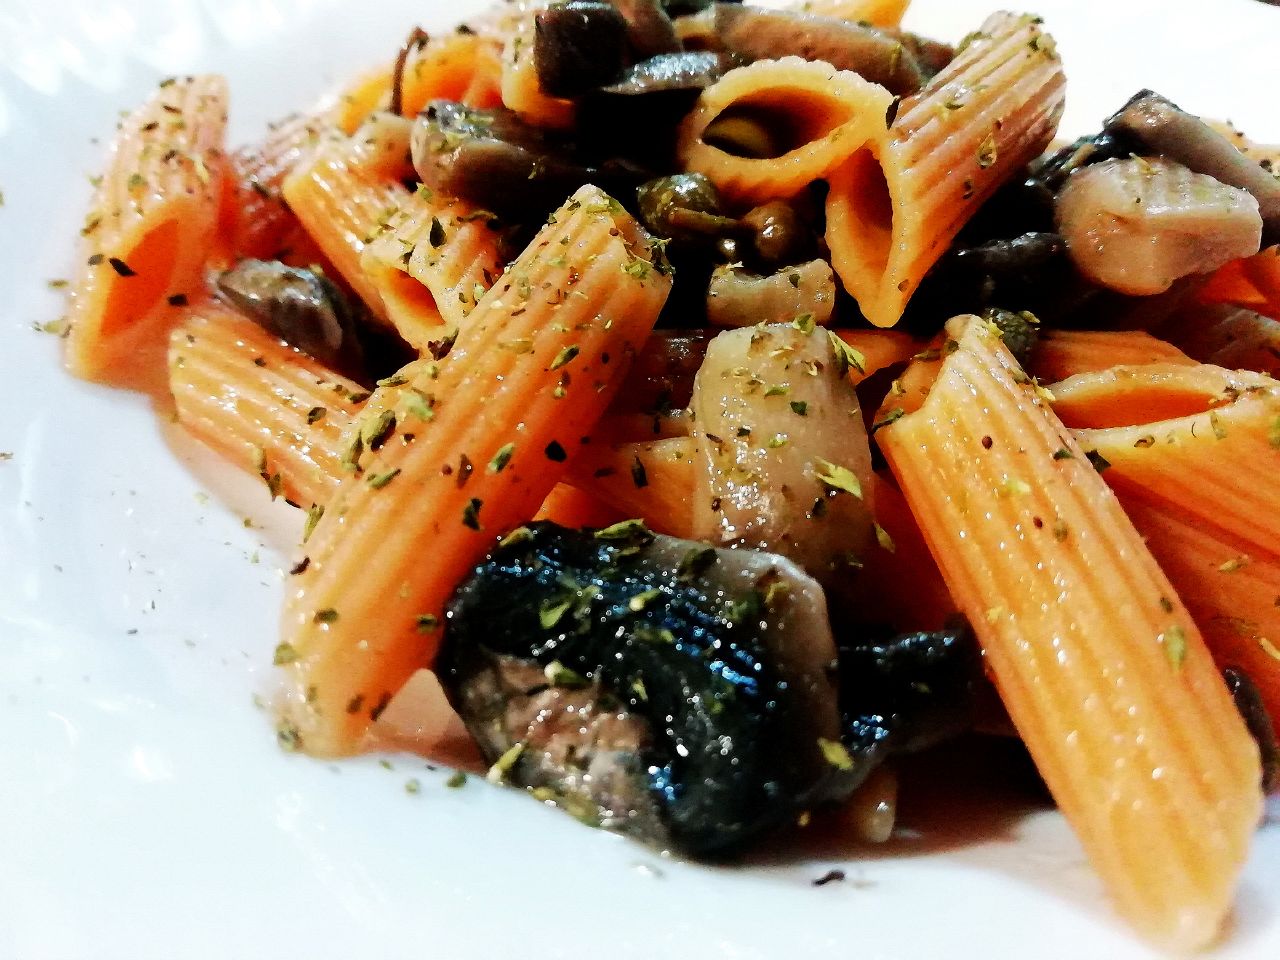 Primi piatti vegetariani senza glutine: penne di lenticchie rosse con funghi e capperi!